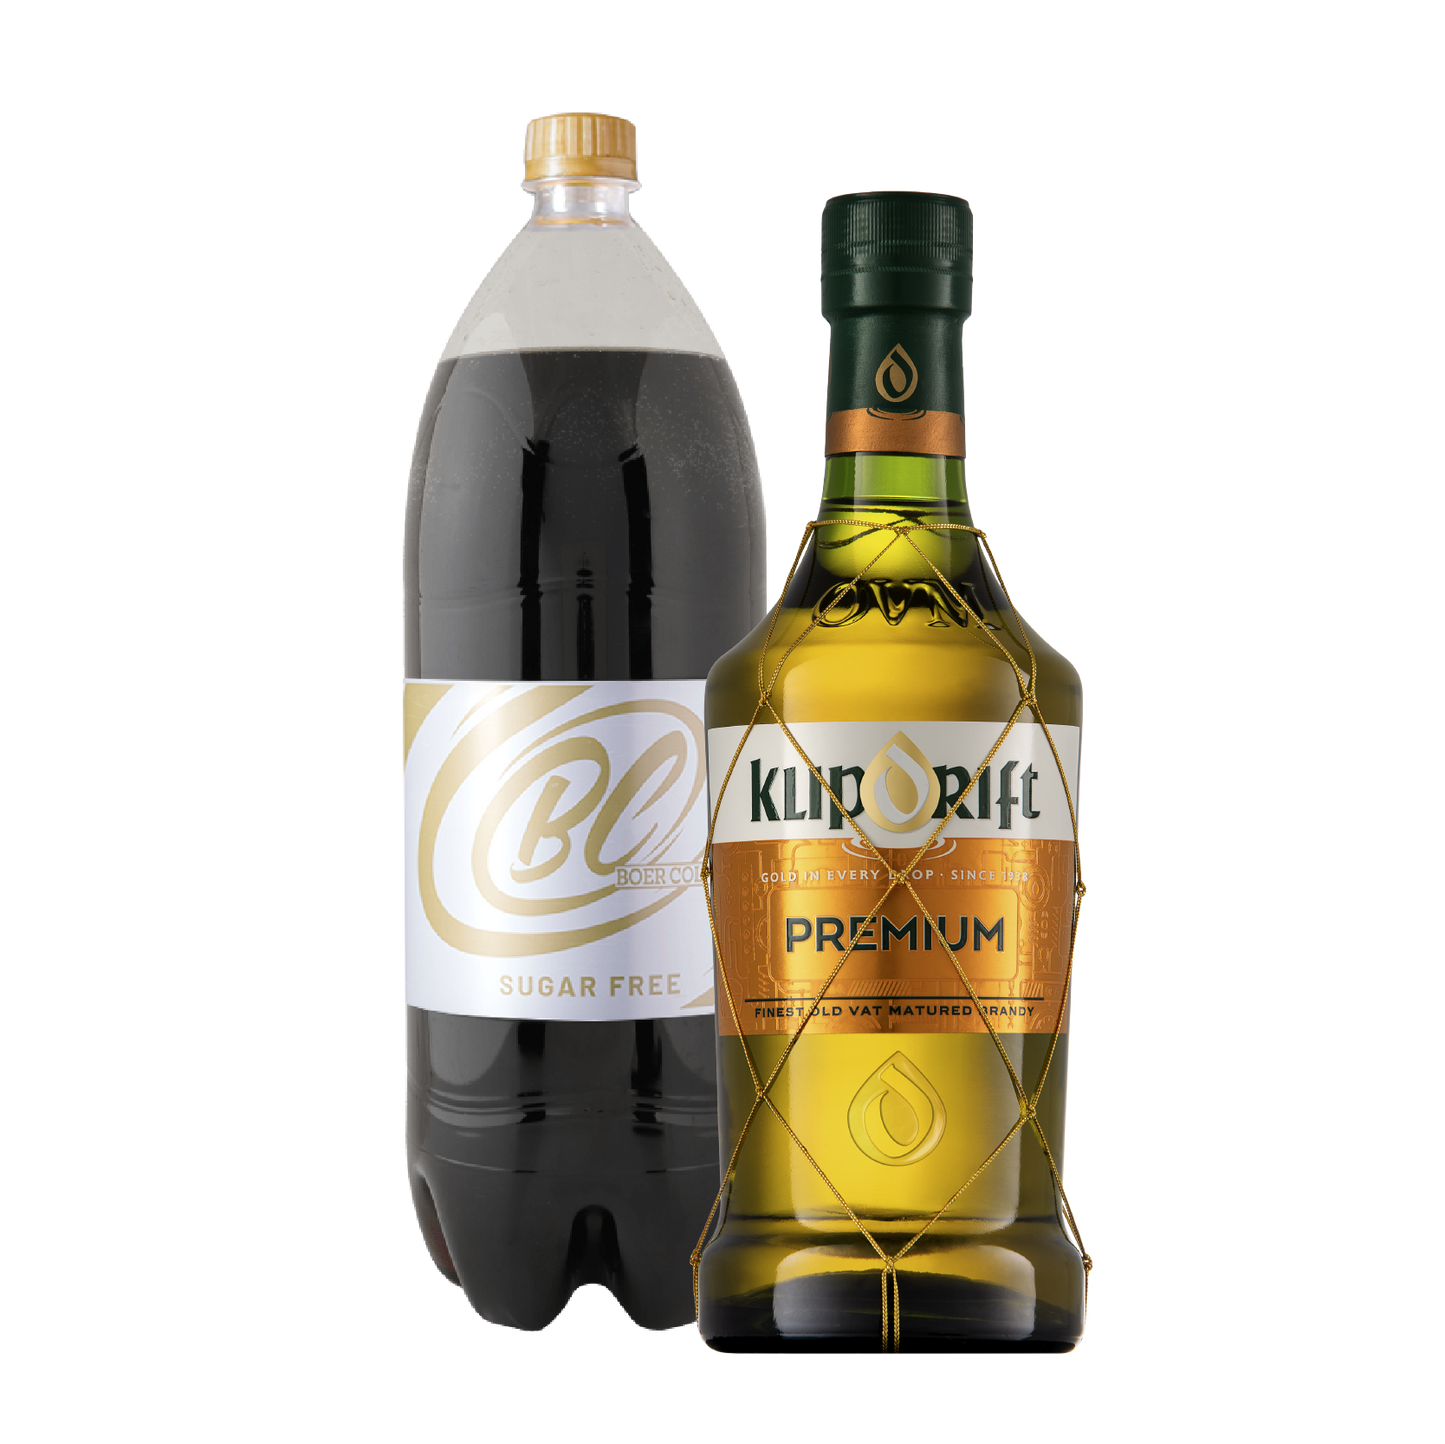 Klipdrift Premium Brandy 750ml & Boer Cola Sugar Free 2L